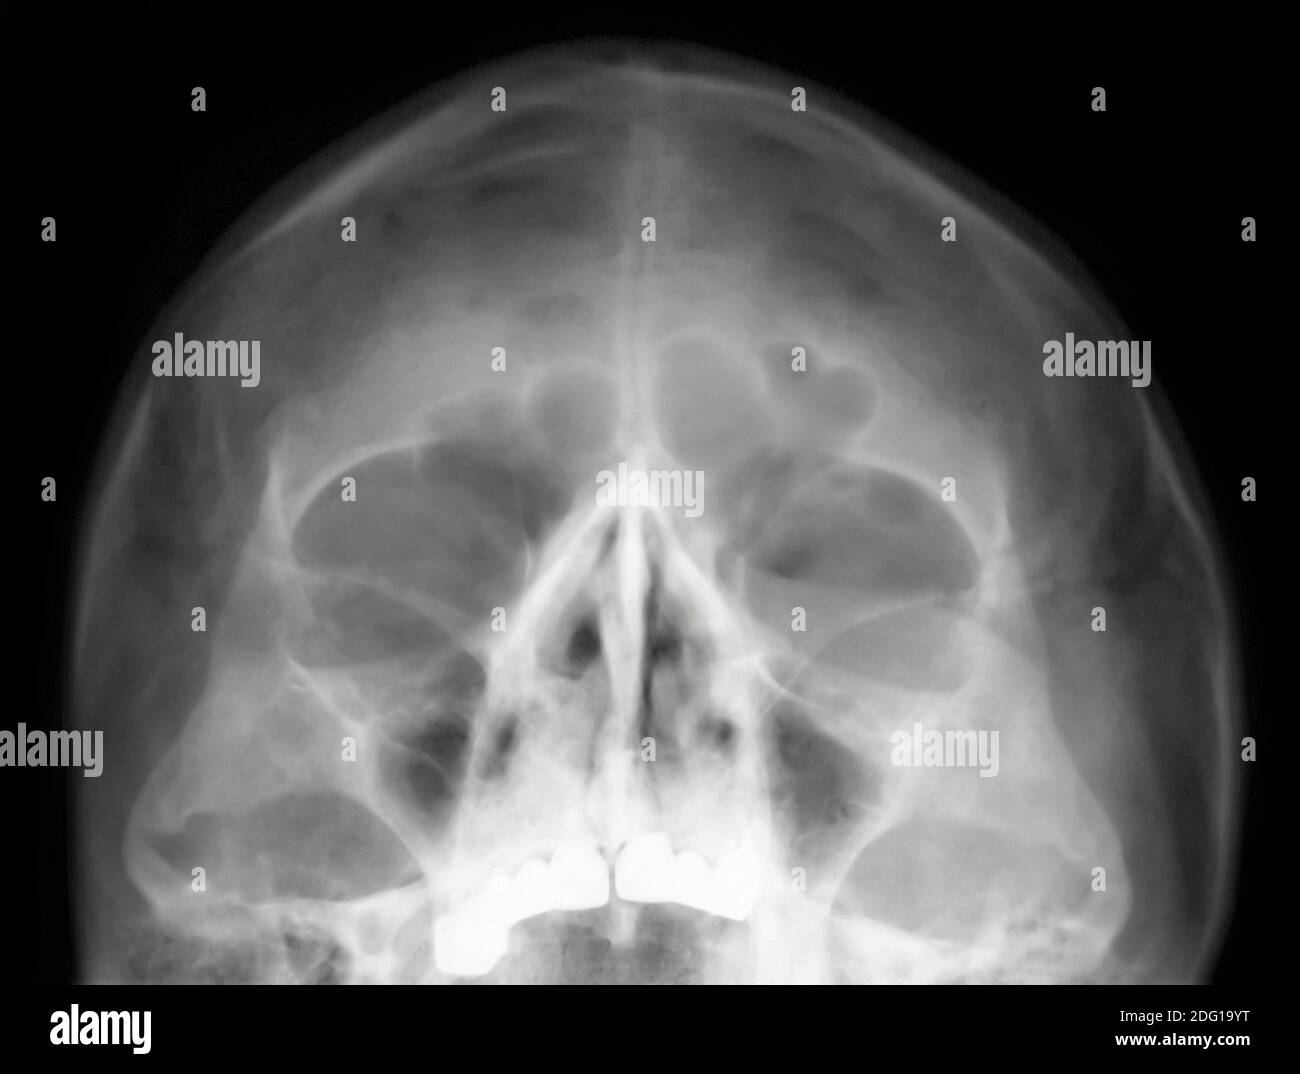 Head x ray Stock Photo